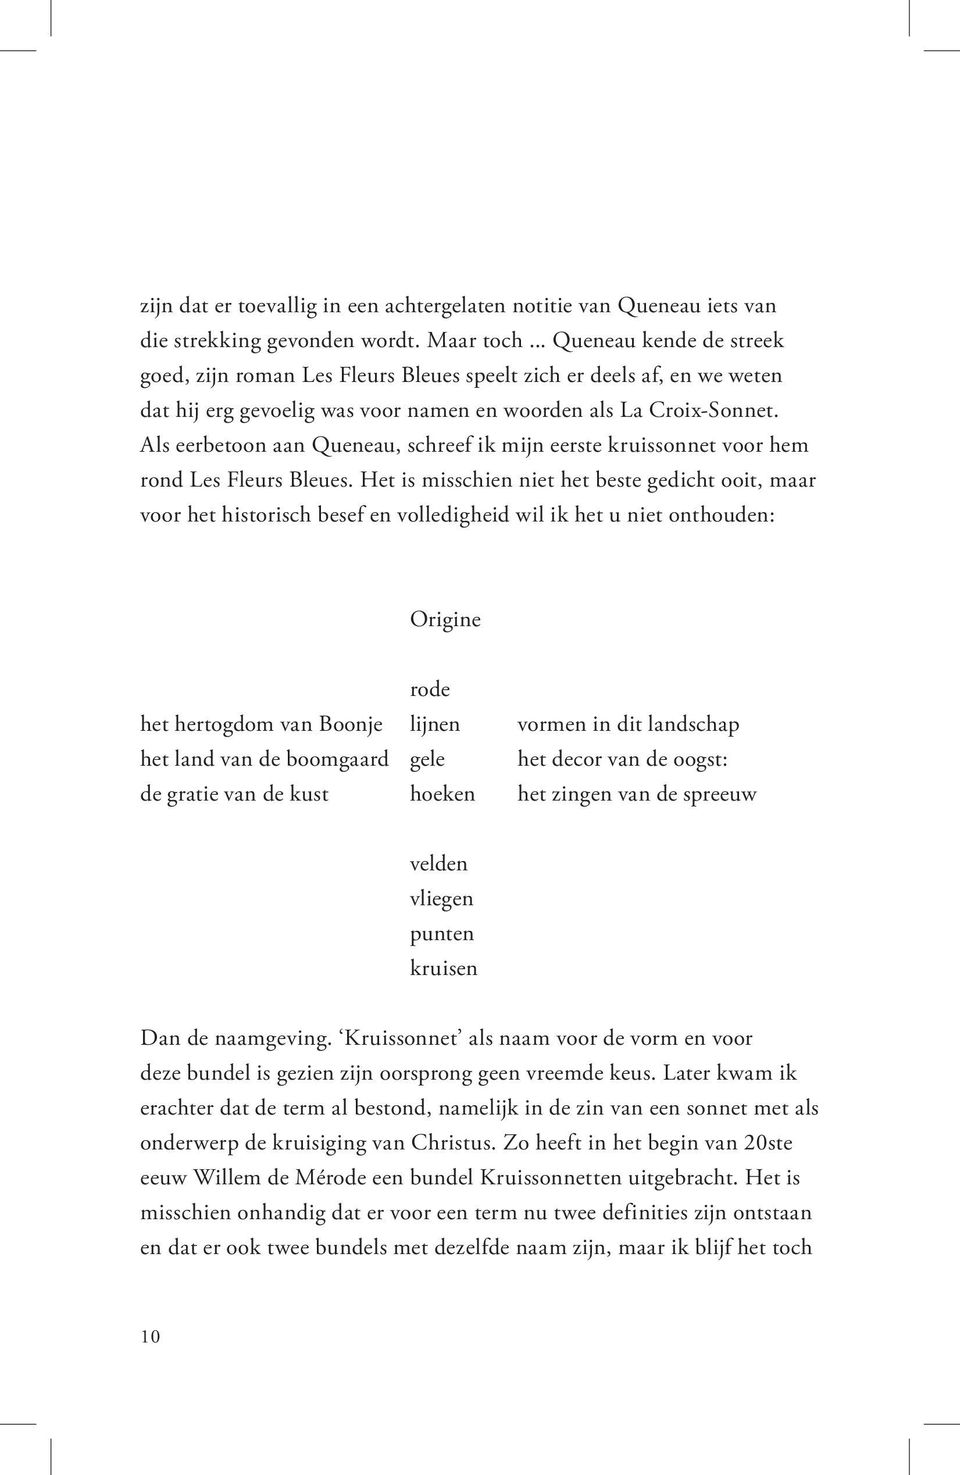 Als eerbetoon aan Queneau, schreef ik mijn eerste kruissonnet voor hem rond Les Fleurs Bleues.